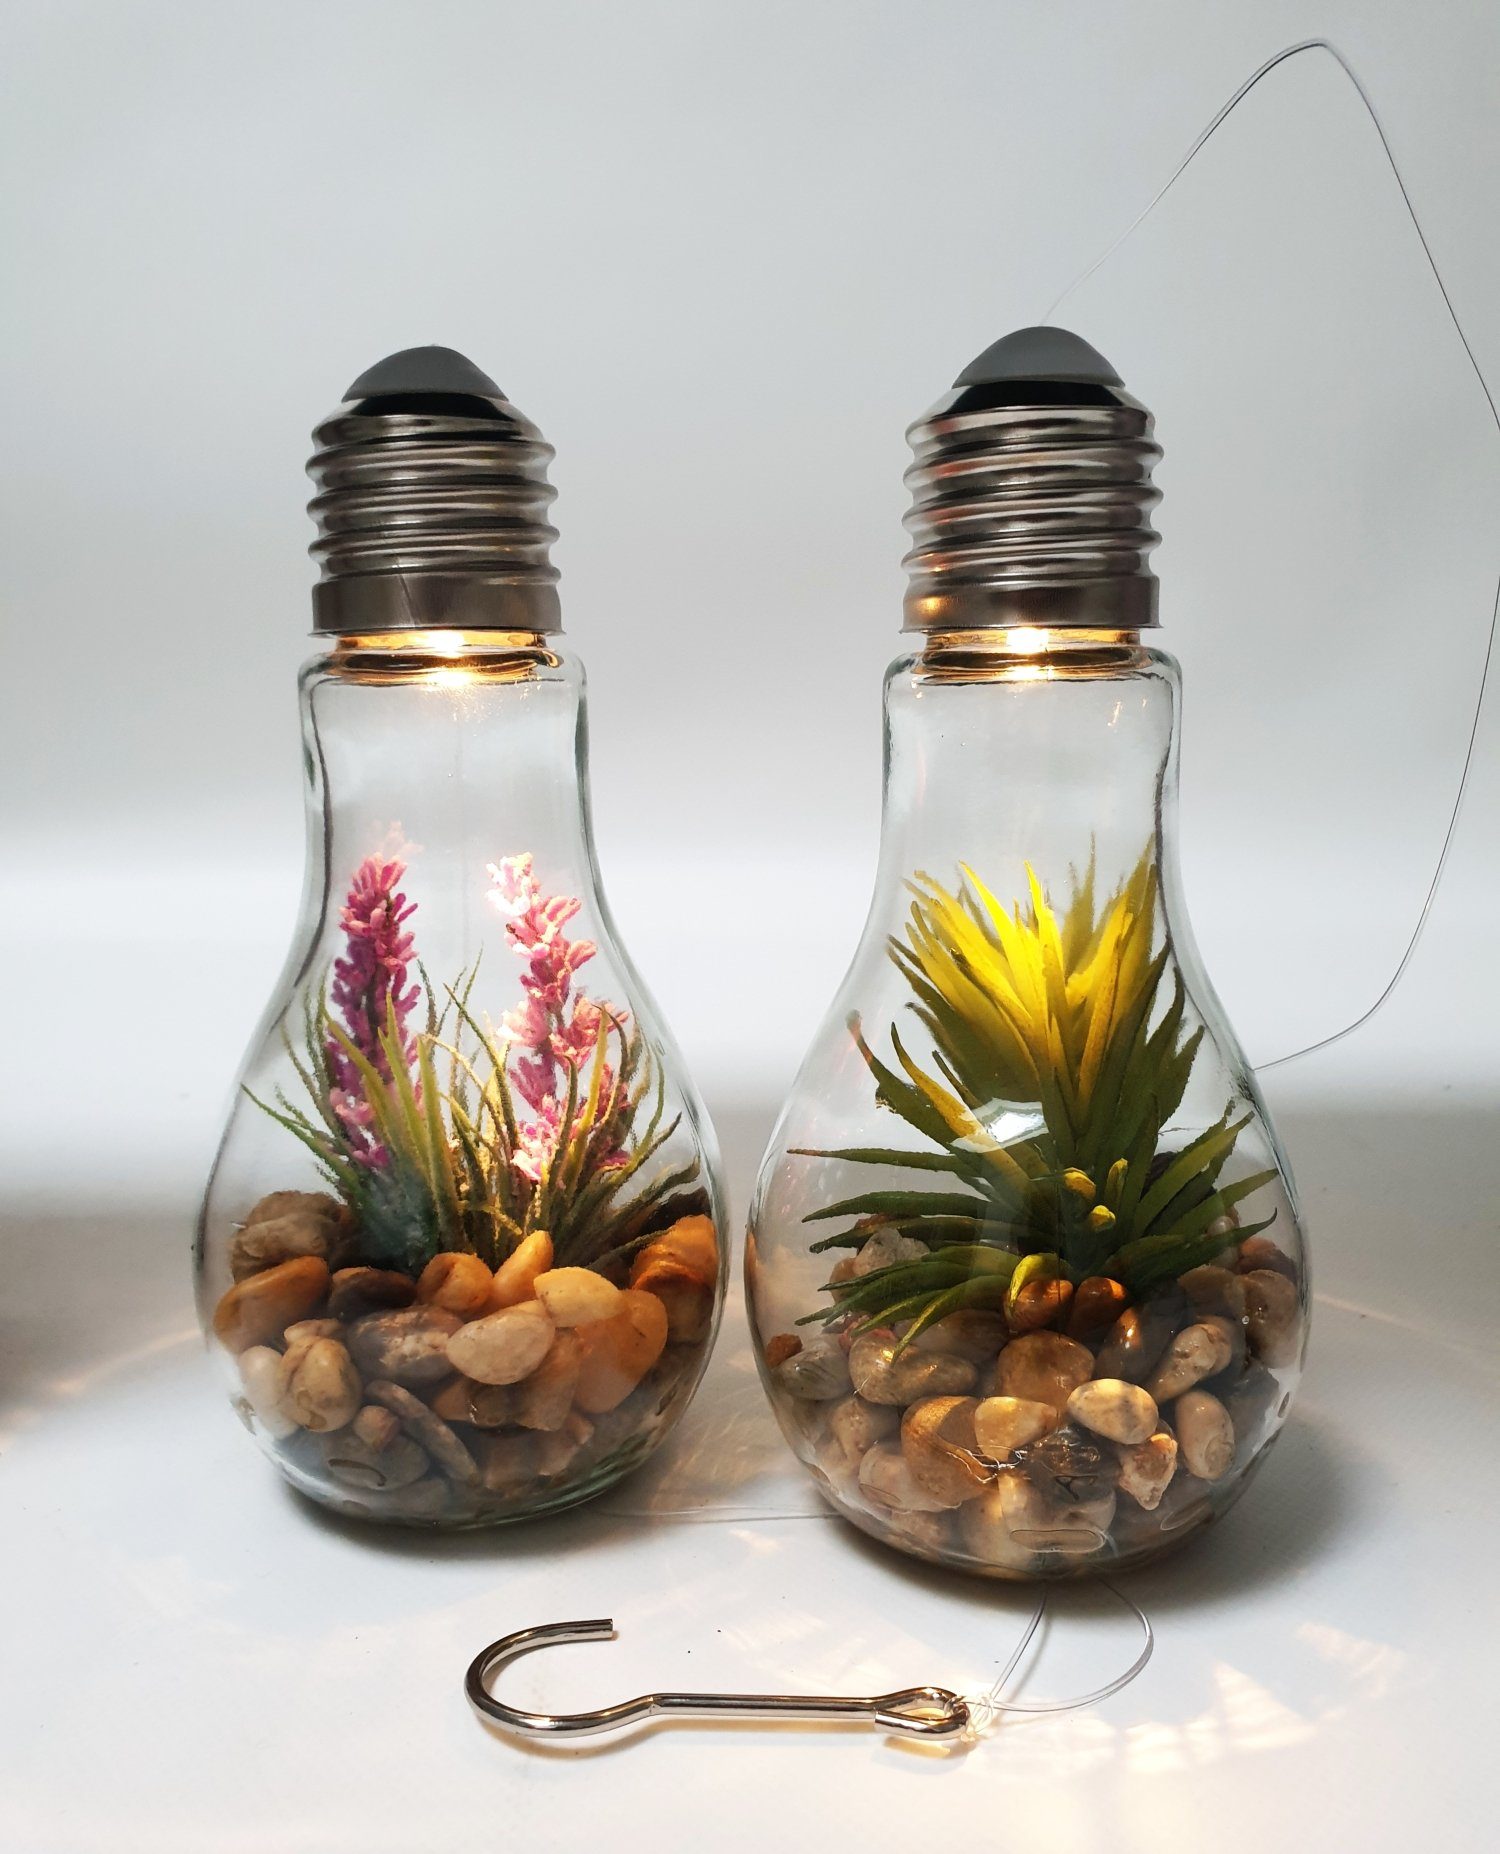 Thomas Philipps LED Dekolicht Deko Glühbirne LED Beleuchtung Glas Dekolampe Hängelampe Kunstpflanze, warmweiß | Leuchtfiguren